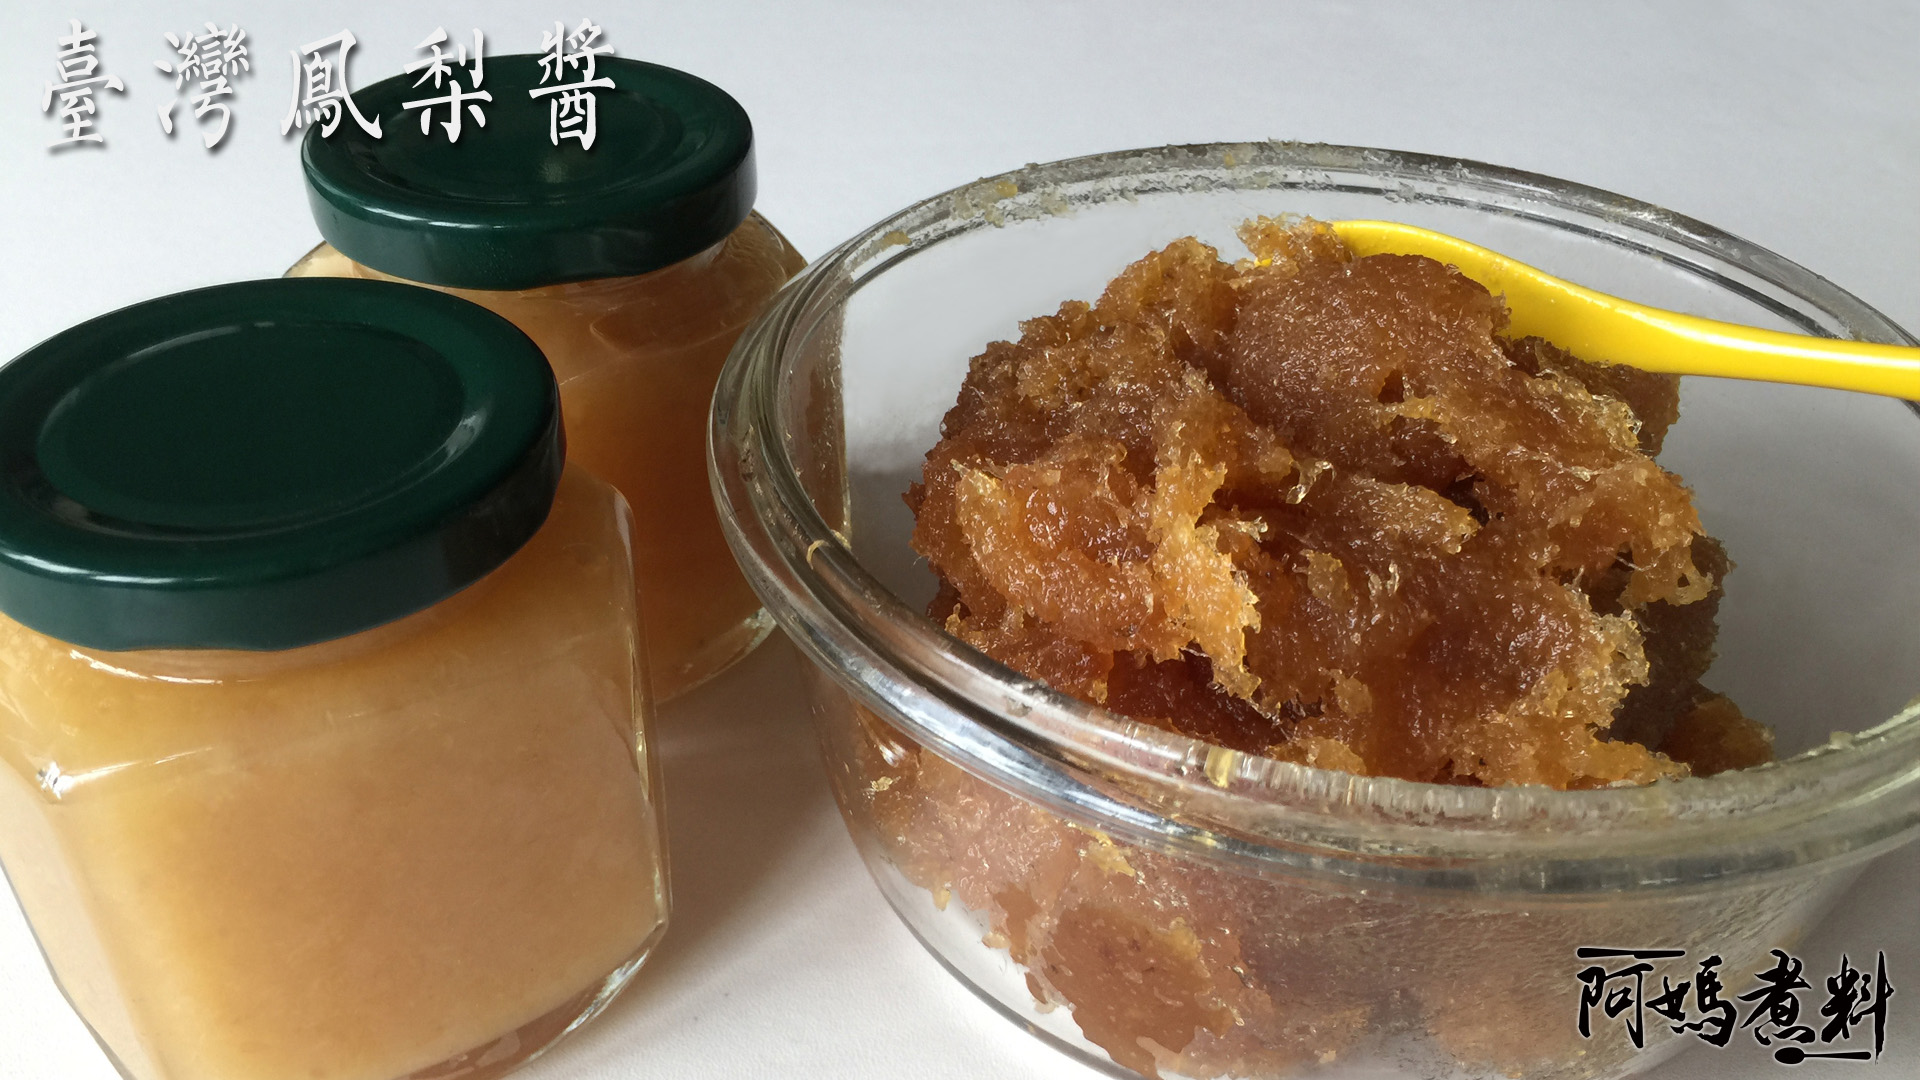 酸酸甜甜鳳梨果醬和鳳梨醬 自製無防腐劑 (鳳梨酥好吃的秘密)